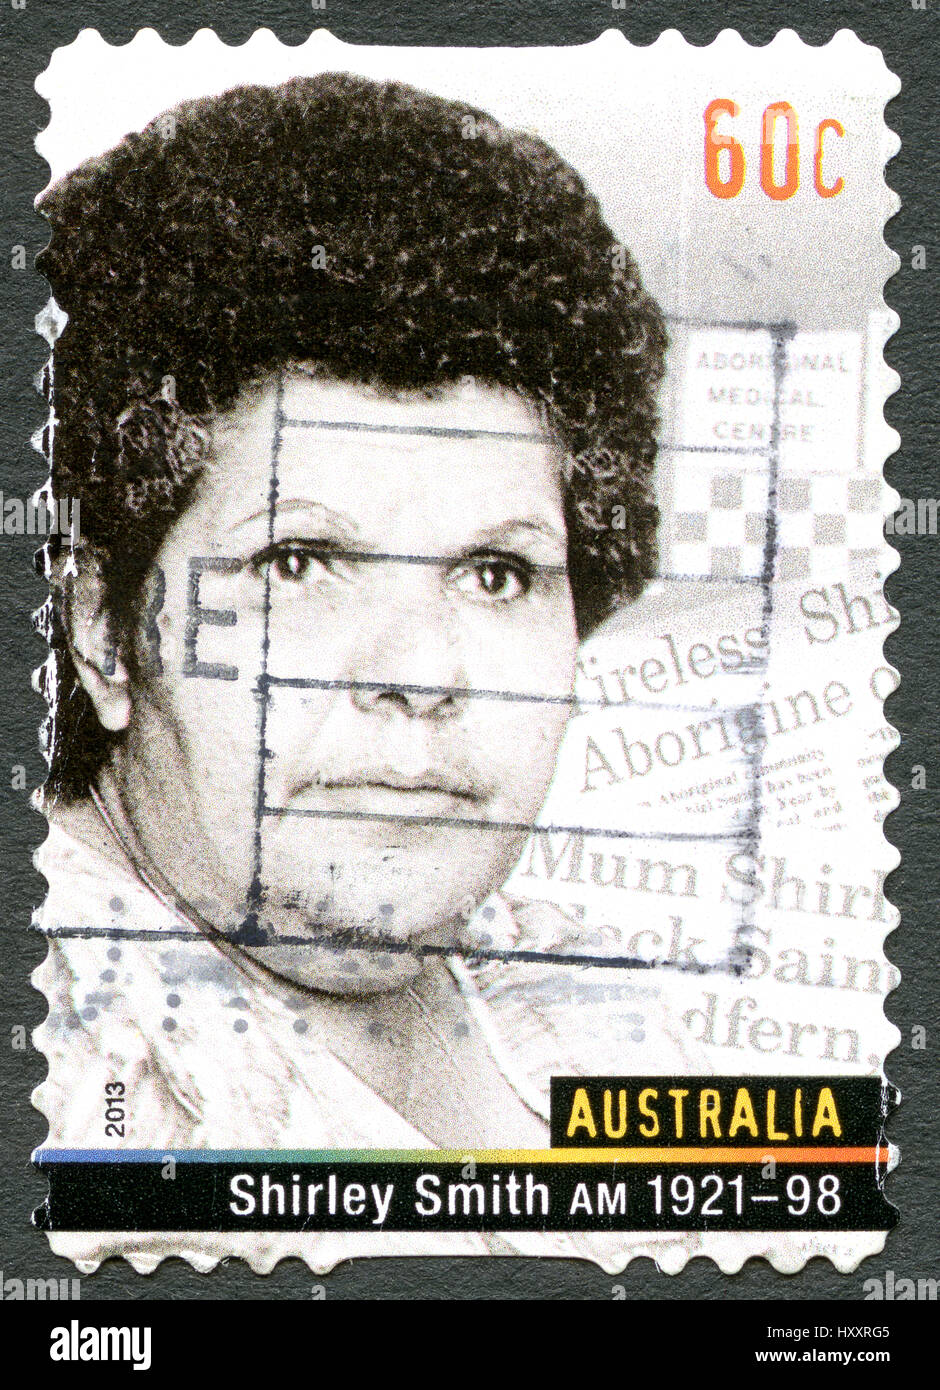 AUSTRALIA - circa 2013: Un sello utilizado desde Australia, mostrando un retrato de Shirley Smith, también conocida como mamá Shirl, un reformador social y hum Foto de stock